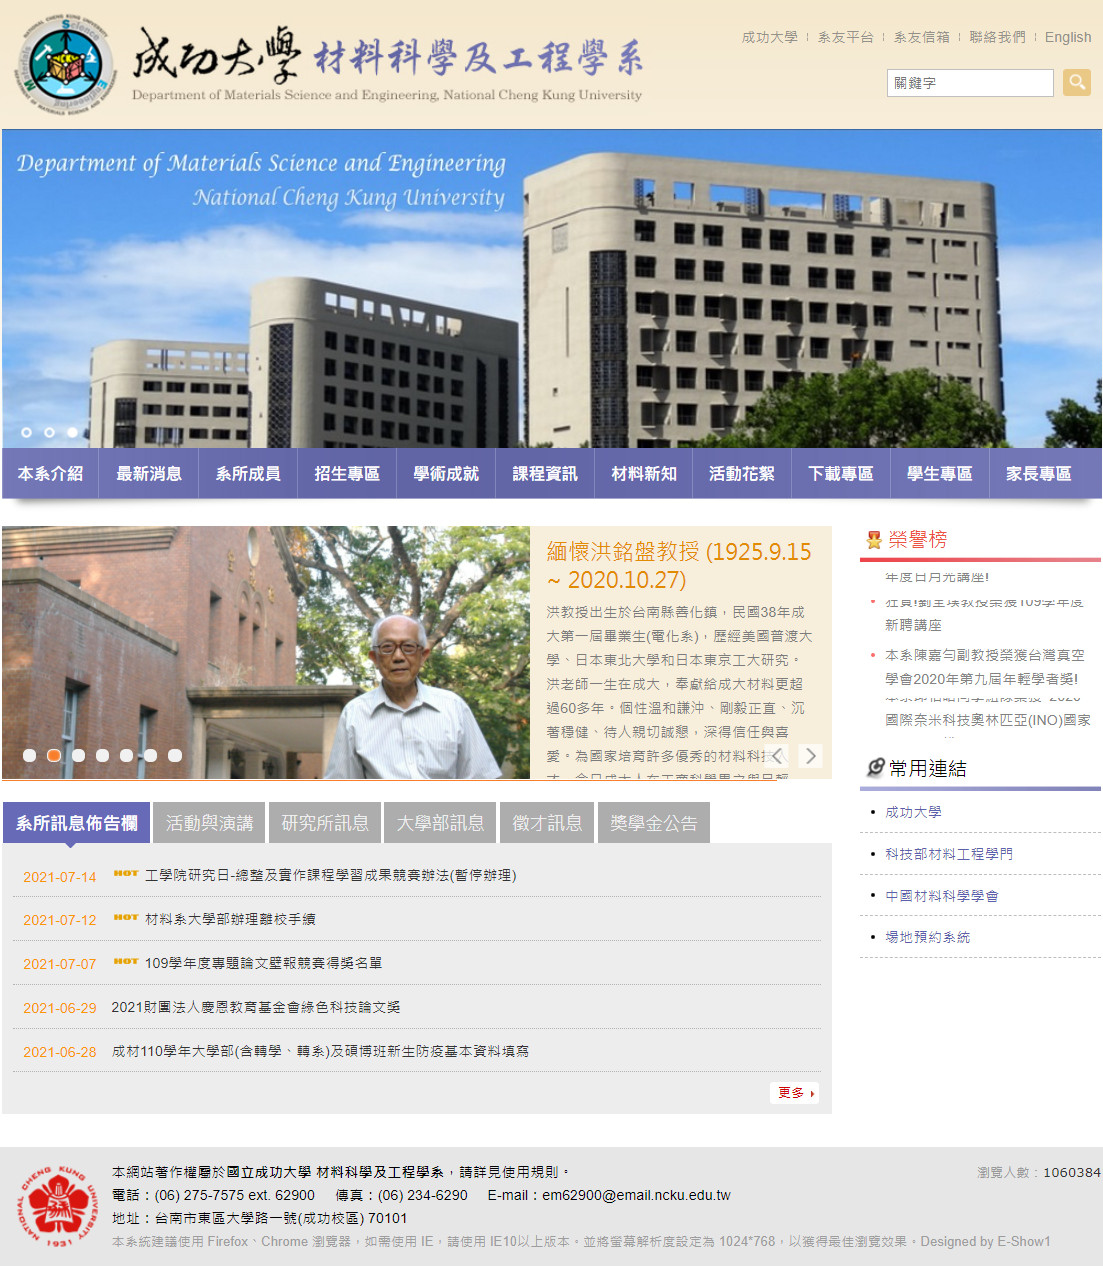 國立成功大學材料科學及工程學系 學校系所網頁設計規劃
網站設計